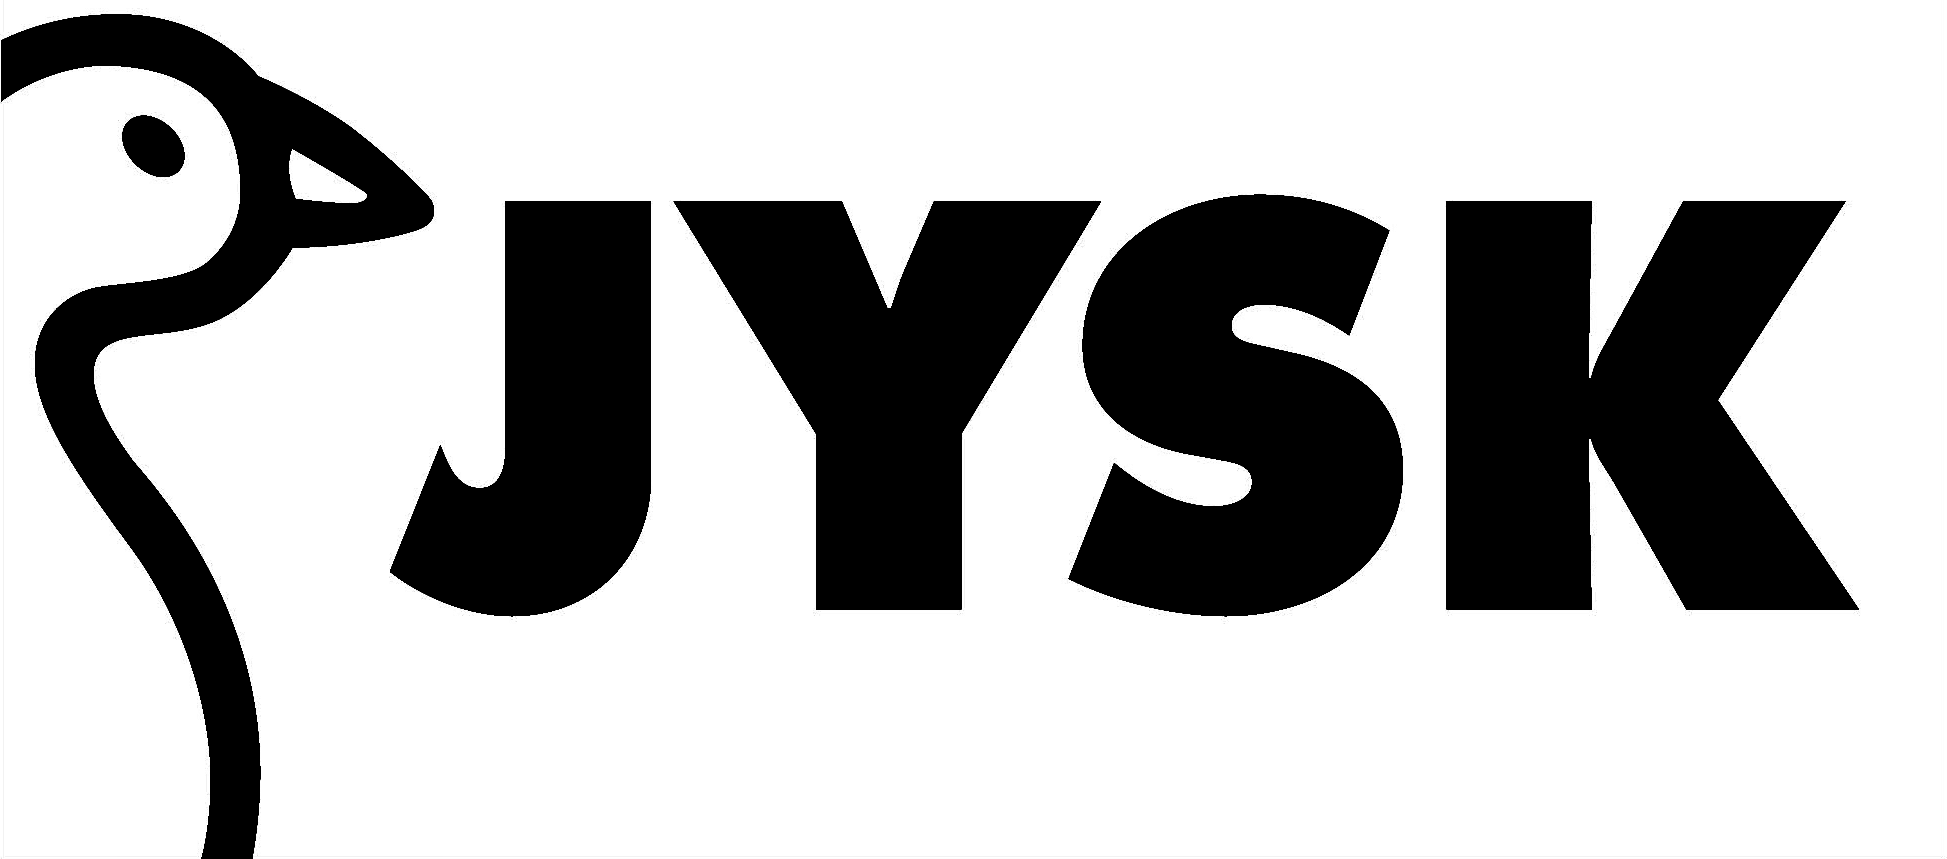 JYSK Logo branding in white and black